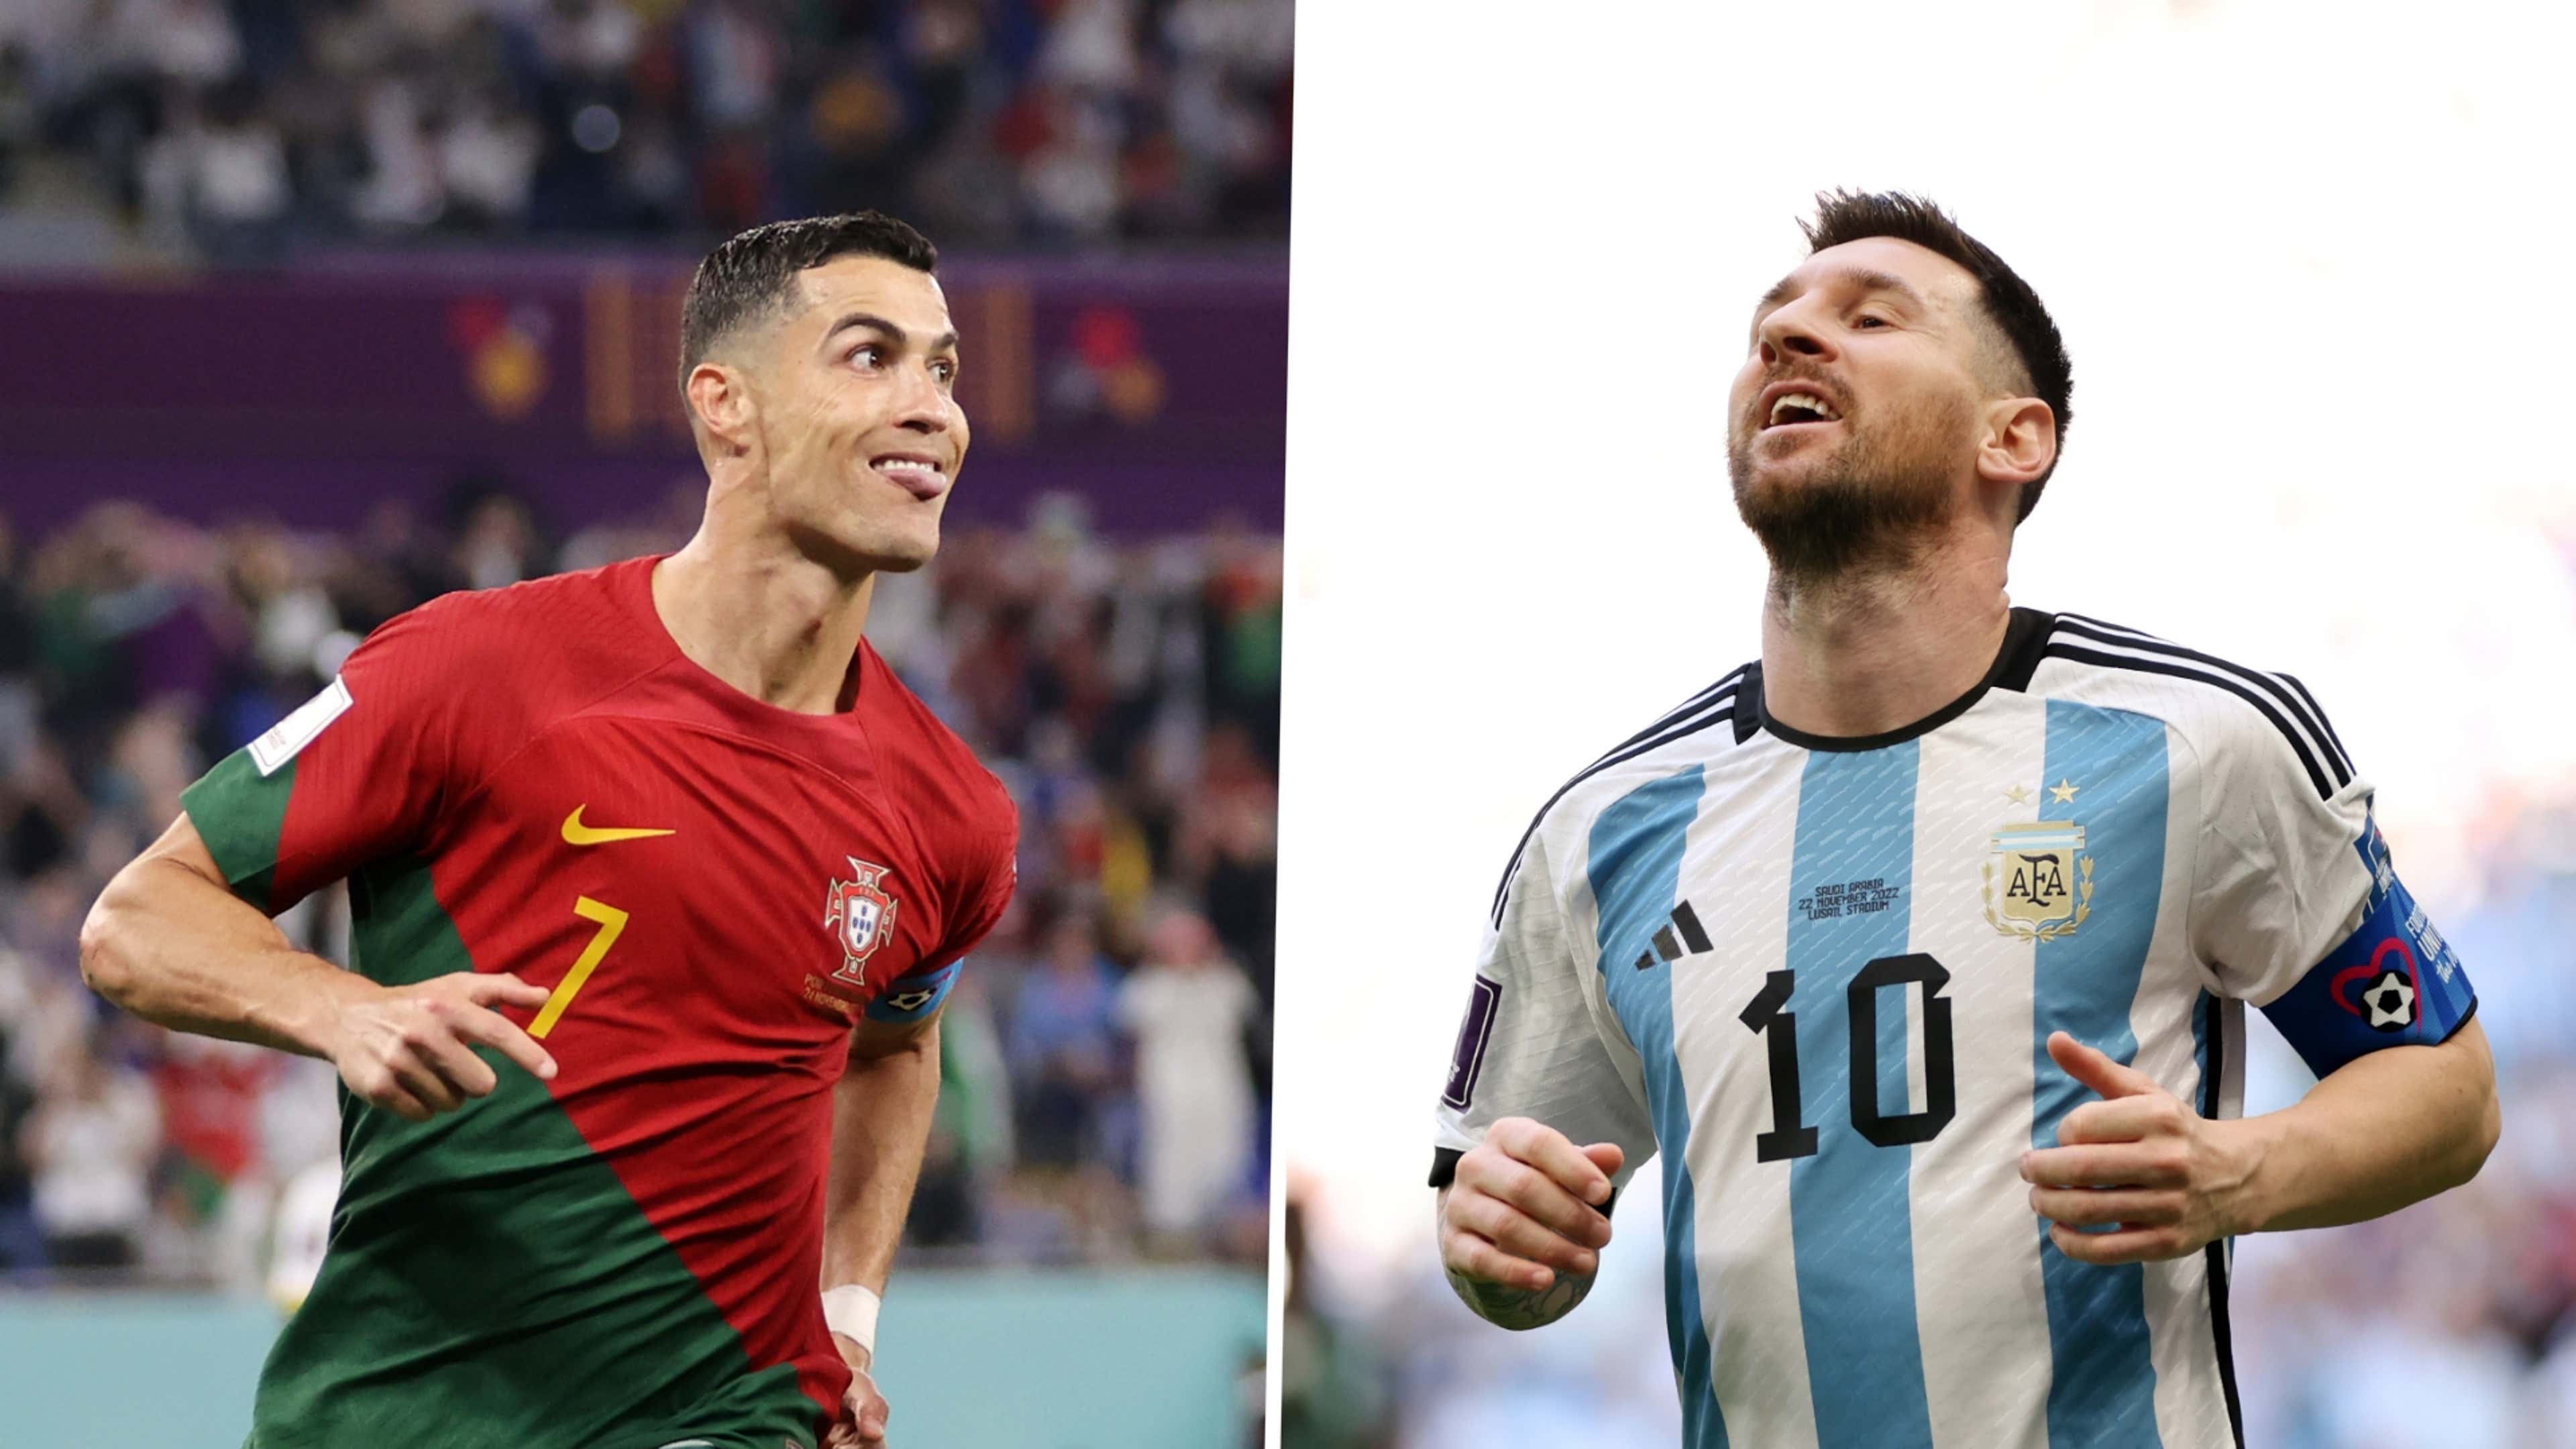 Quem fez mais gols? Cristiano Ronaldo ou Lionel Messi?